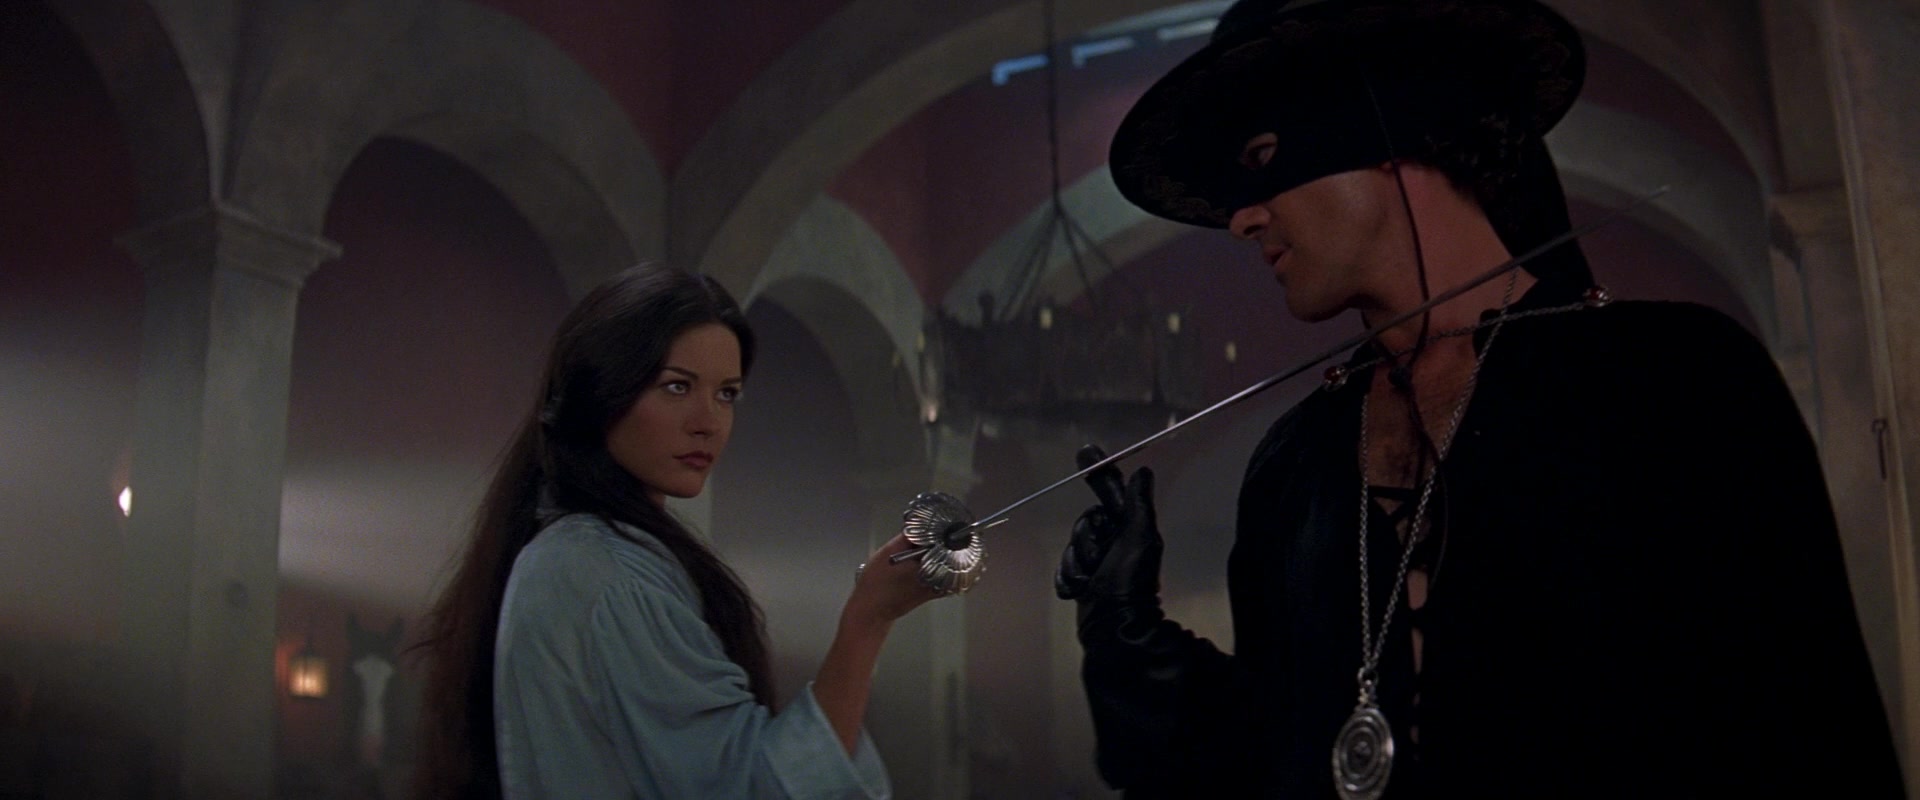 Elena Montero (Catherine Zeta-Jones) accosts Zorro (Antonio Banderas) in The Mask of Zorro (1998), Sony Pictures via Blu-ray